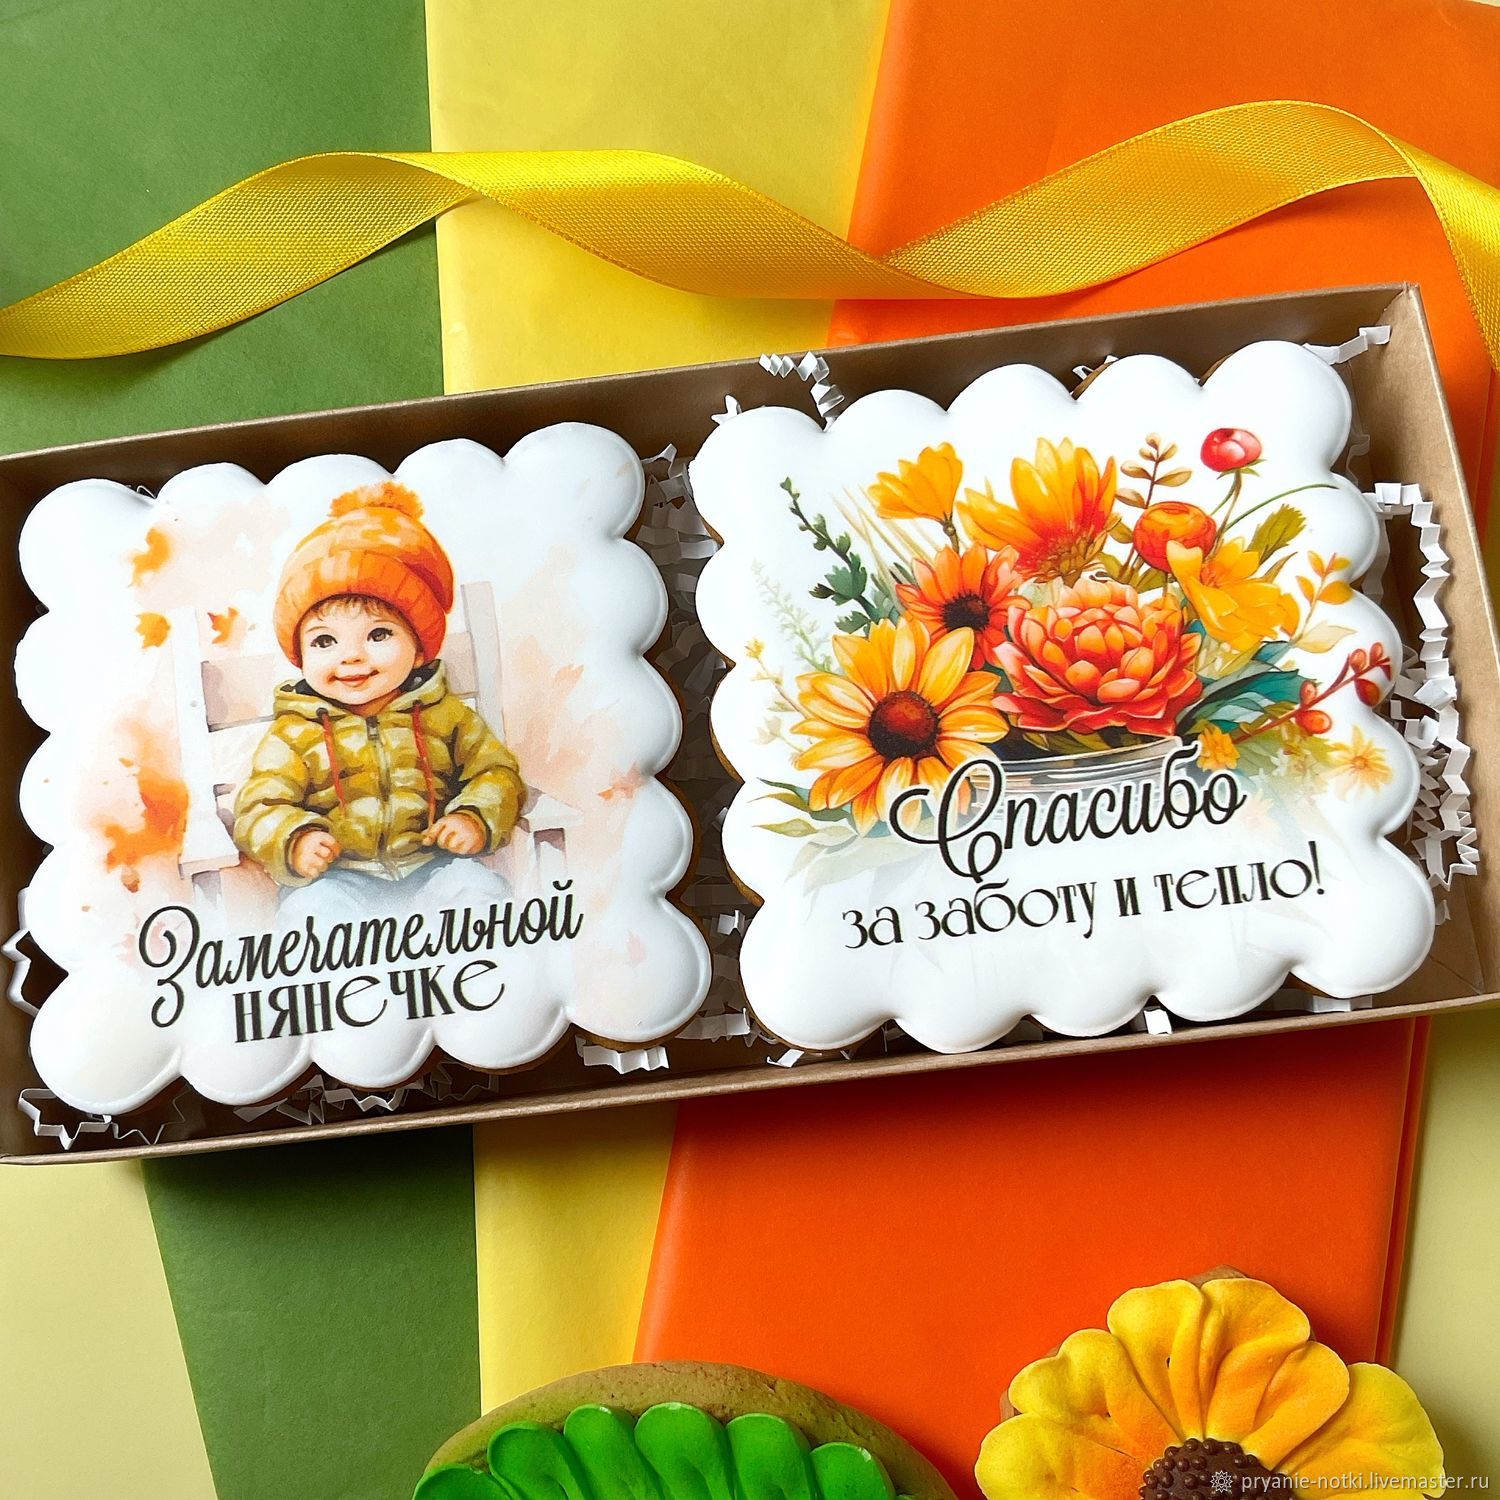 Подарочный набор на день рождения няне DREAMBOX купить в интернет-магазине Wildberries